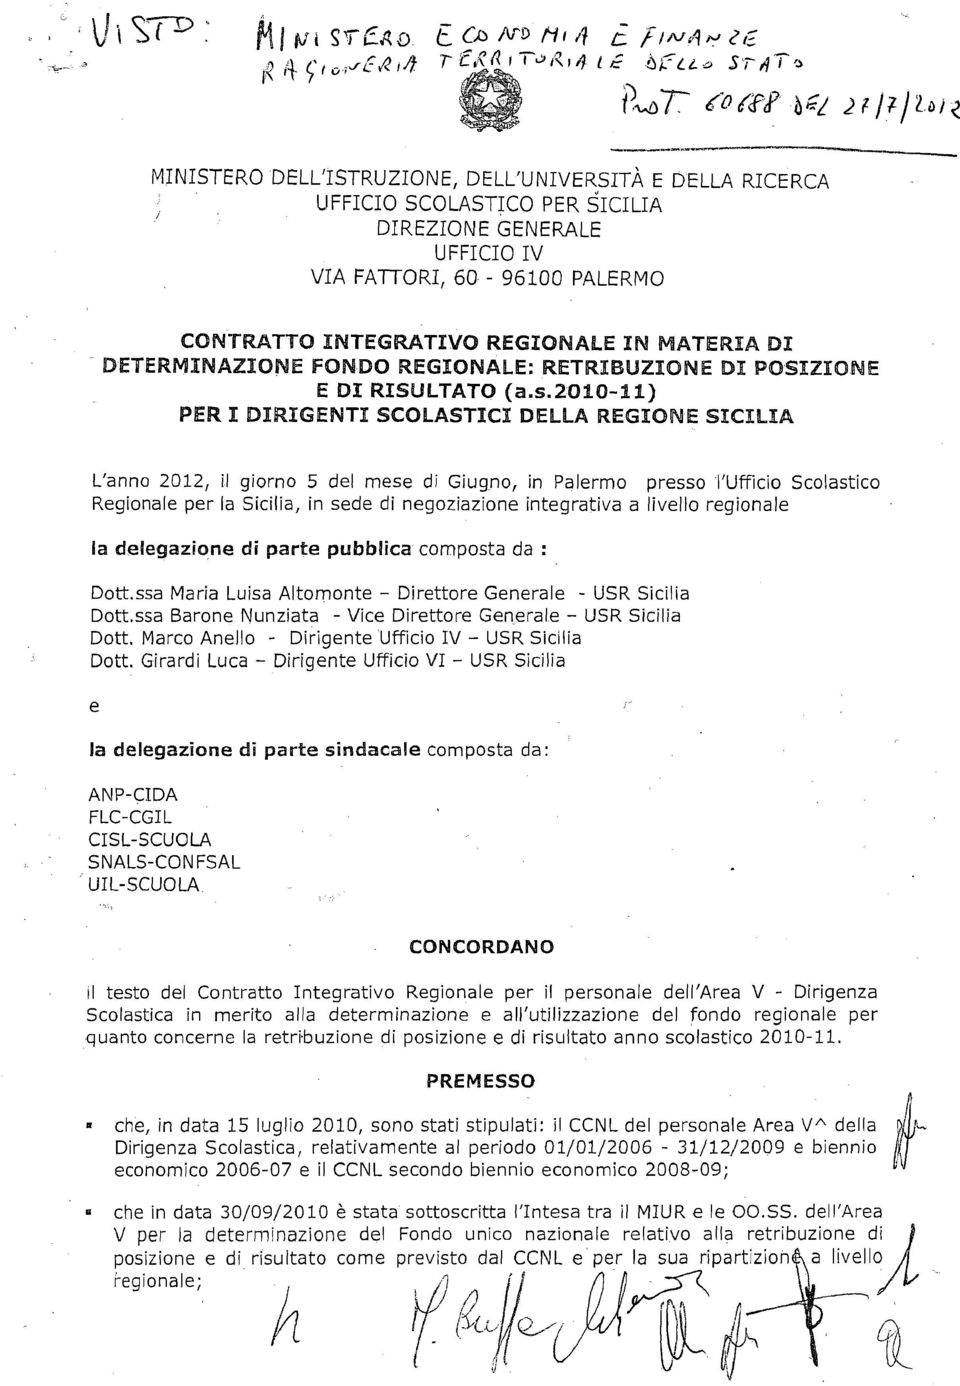 IN MATERIA DI DETERMINAZIONE FONDO REGIONALE: RETRIBUZIONE DI POSIZIONE E 01 RISUlTATO (a.s.